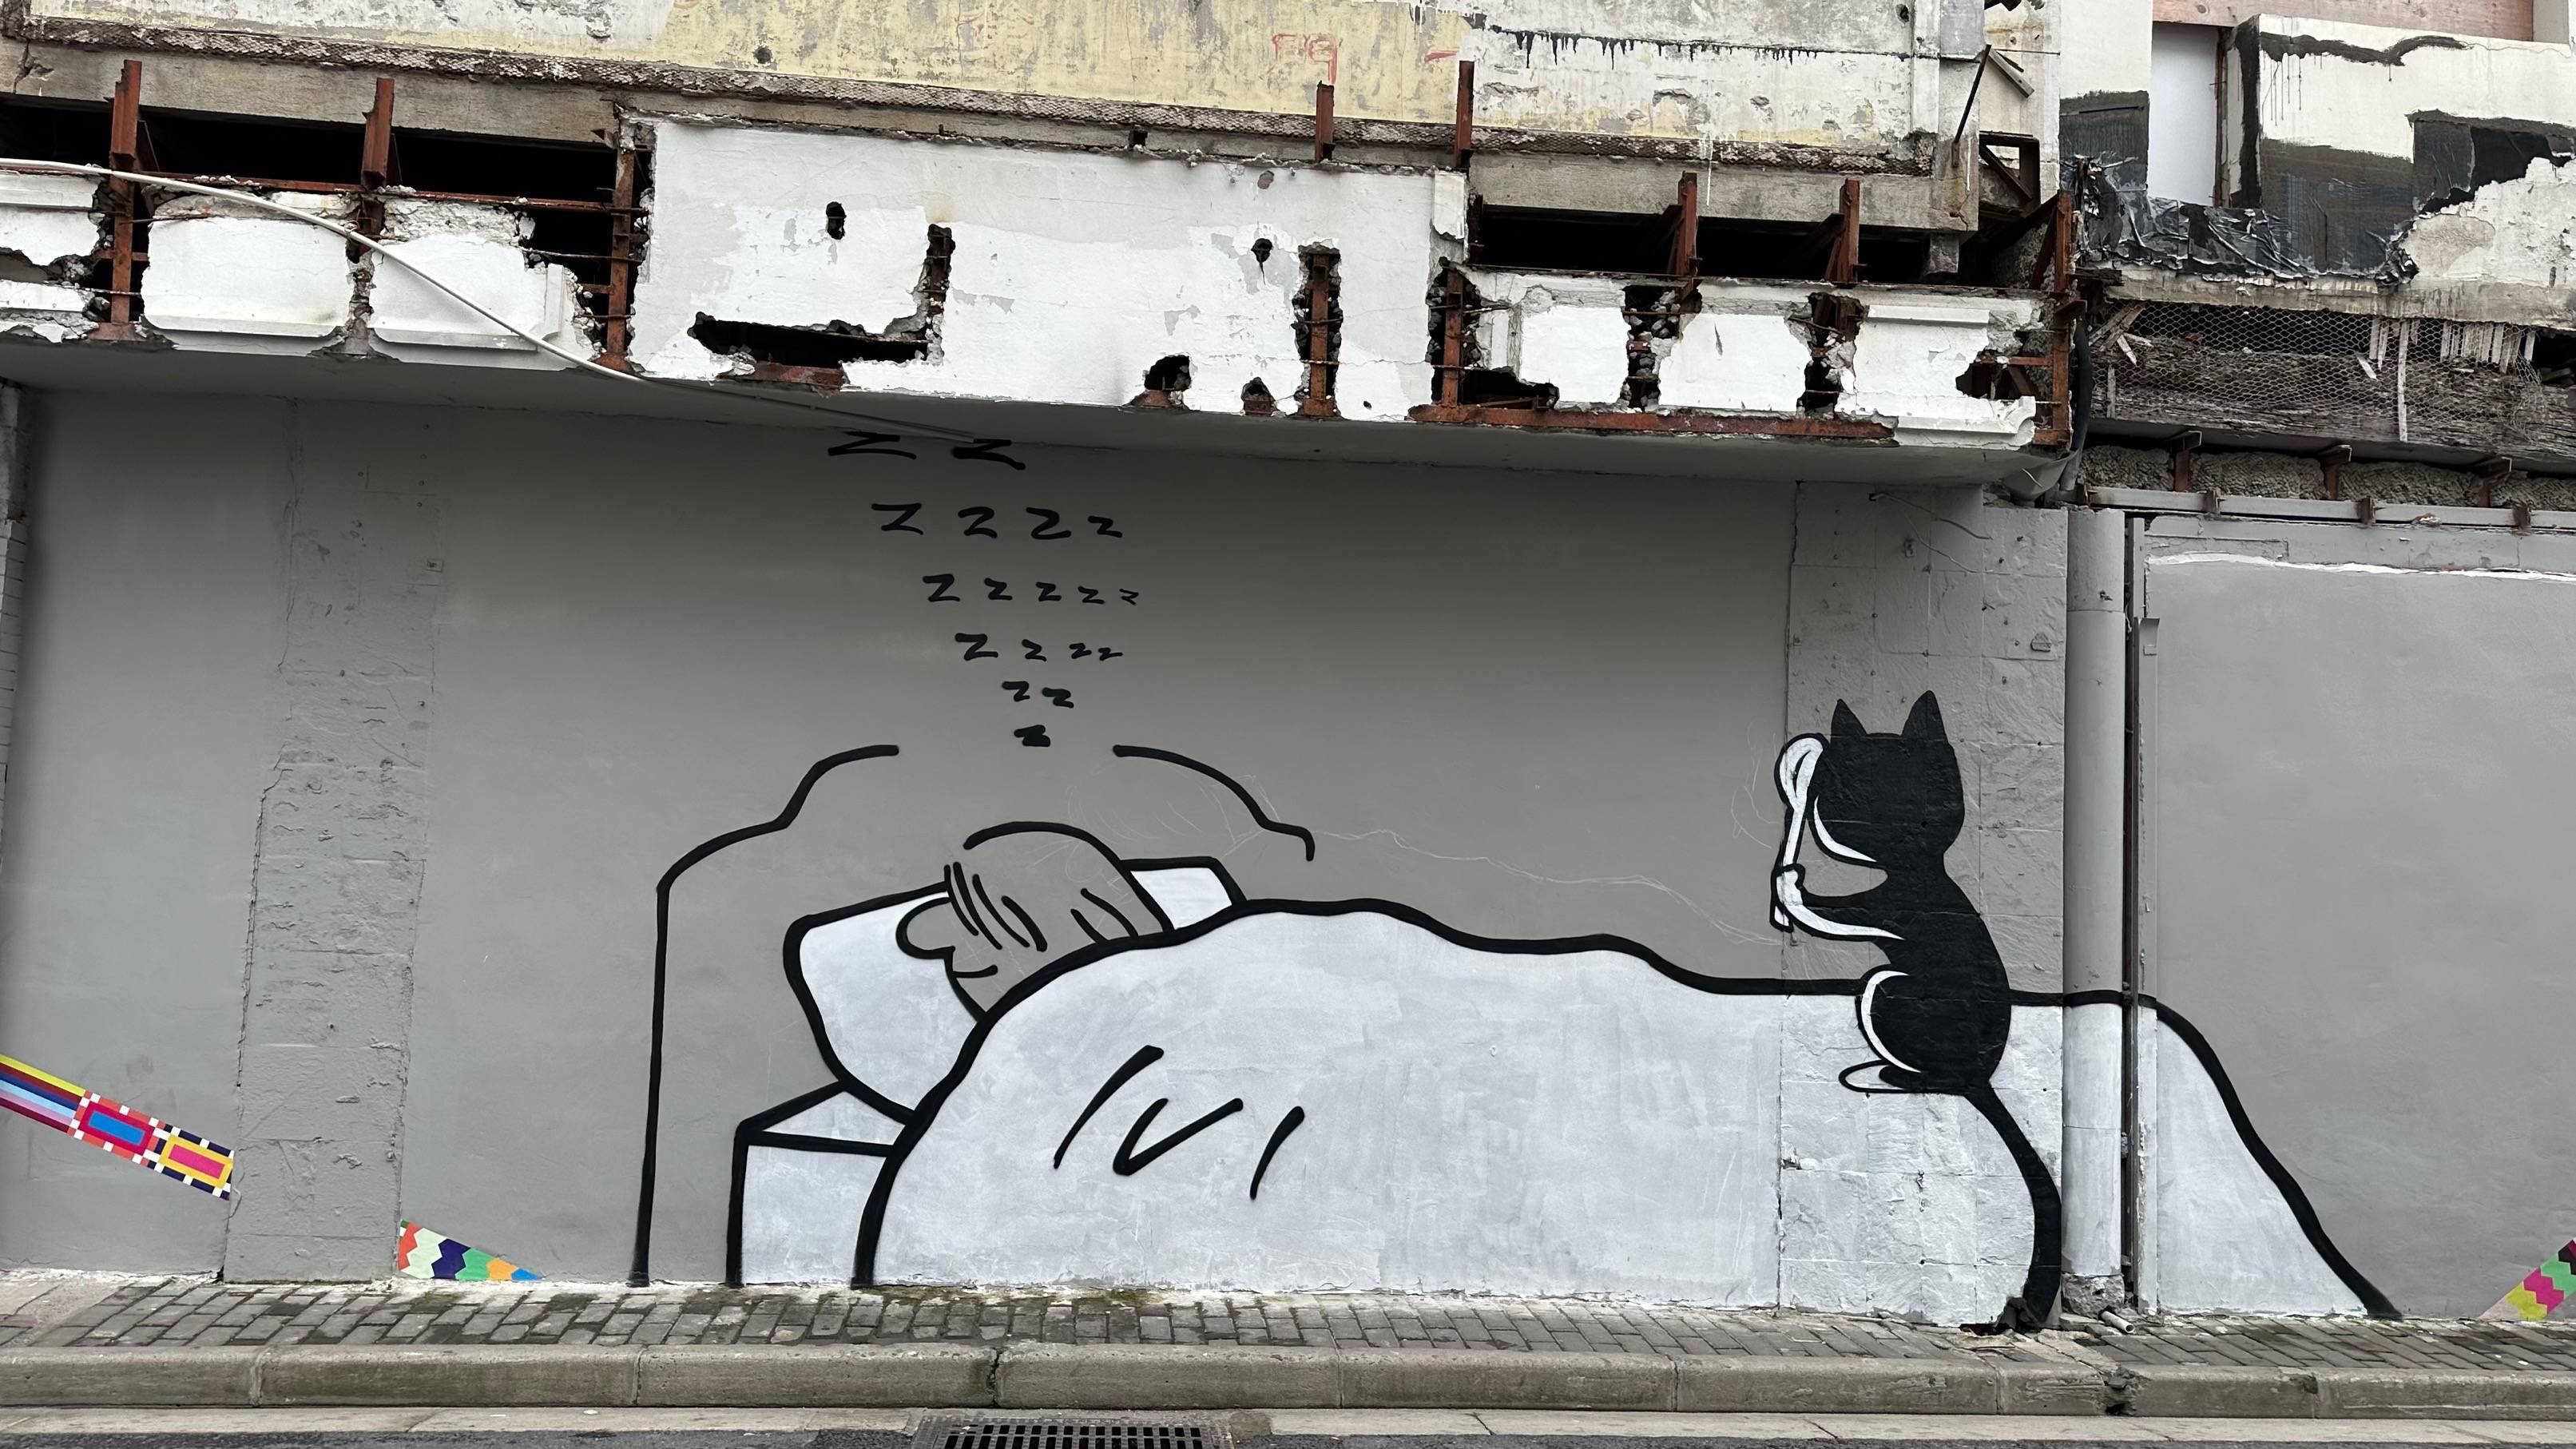 “外滩猫街”背后的艺术家Tango：猫是能疗愈人心的宠物